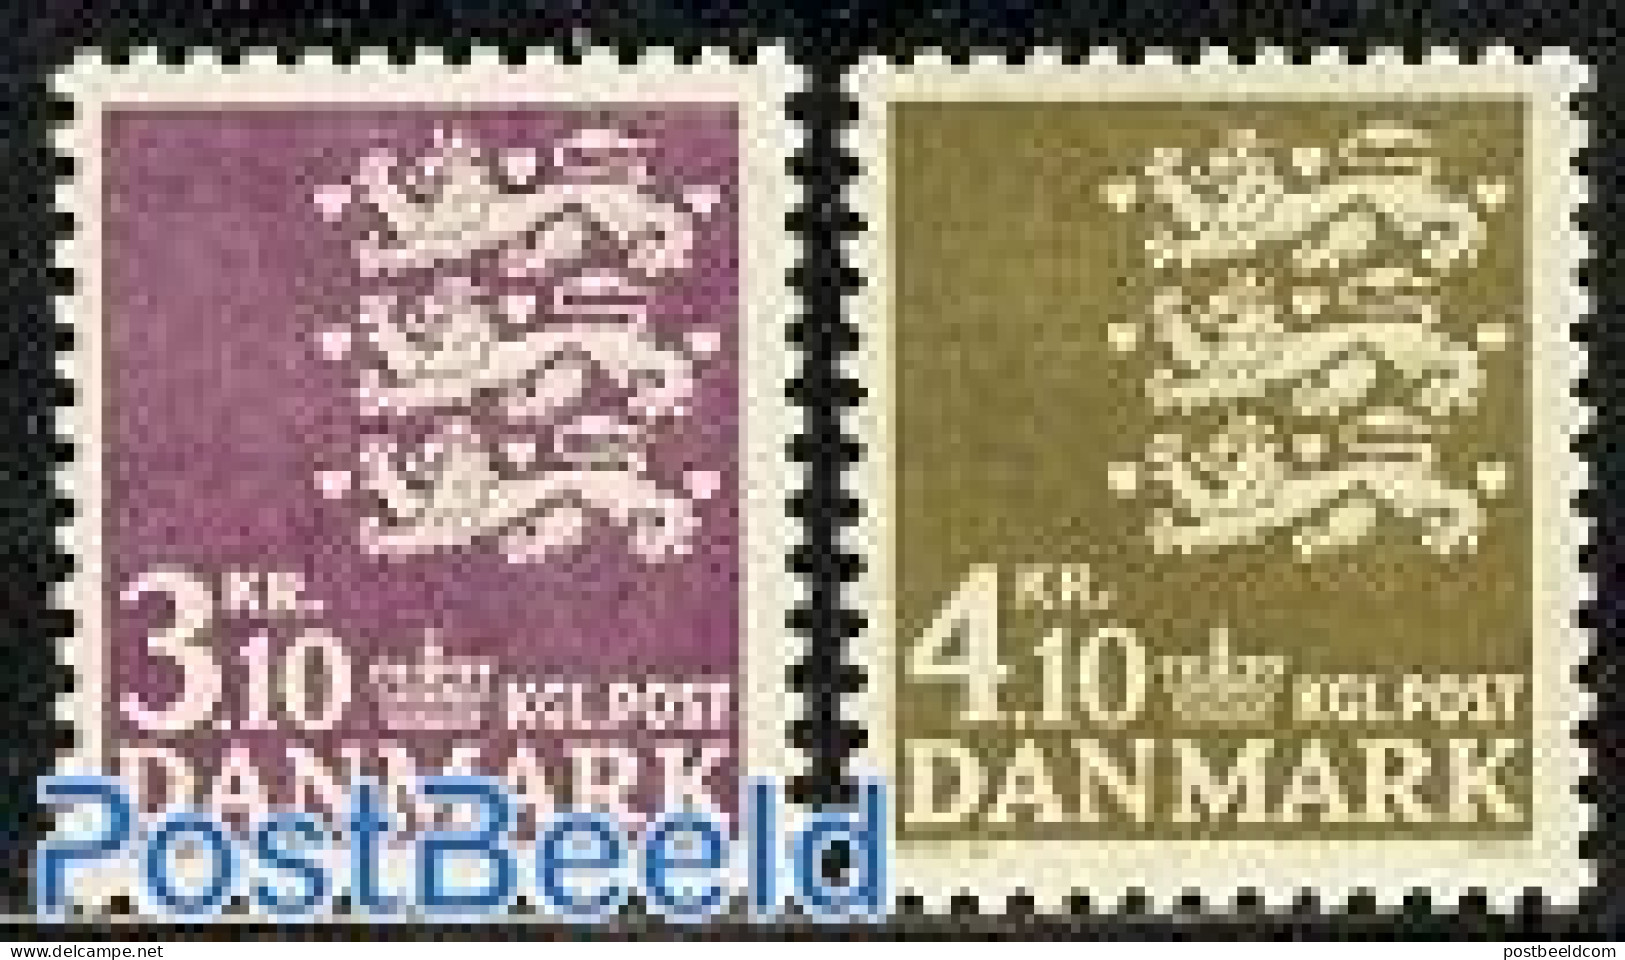 Denmark 1970 Definitives 2v, Mint NH - Nuevos